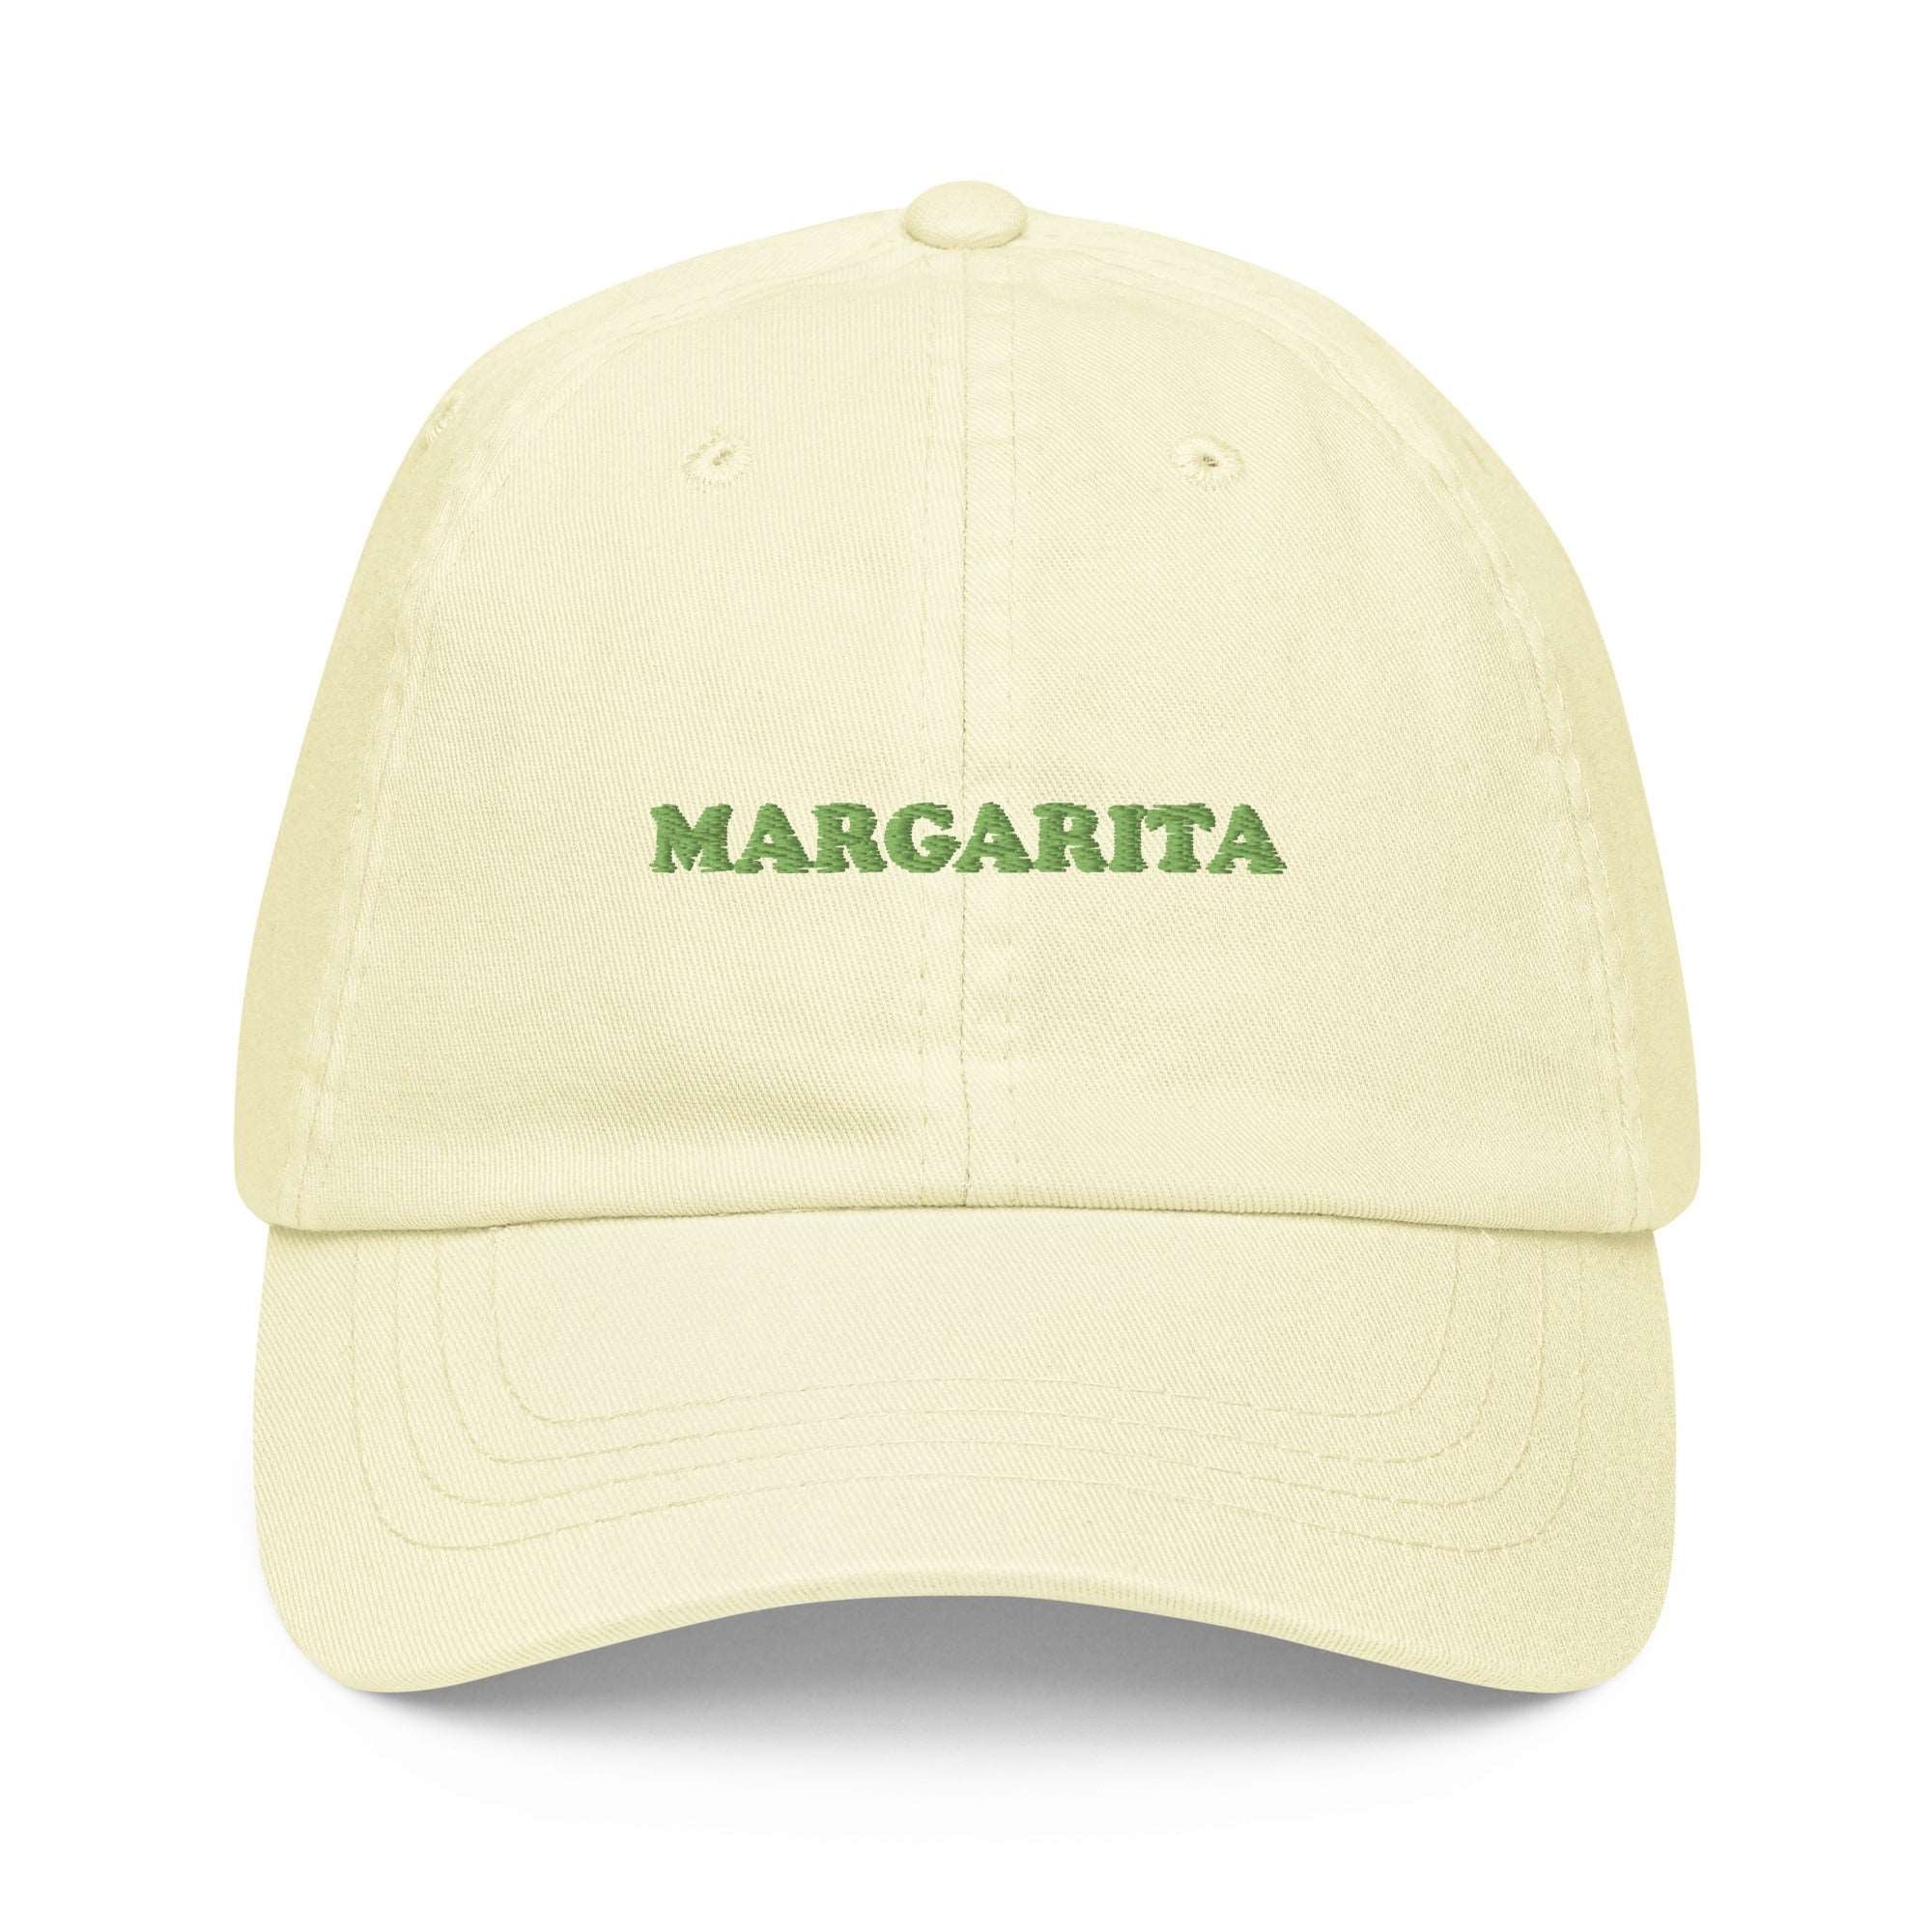 Margarita - Embroidered Pastel Cap